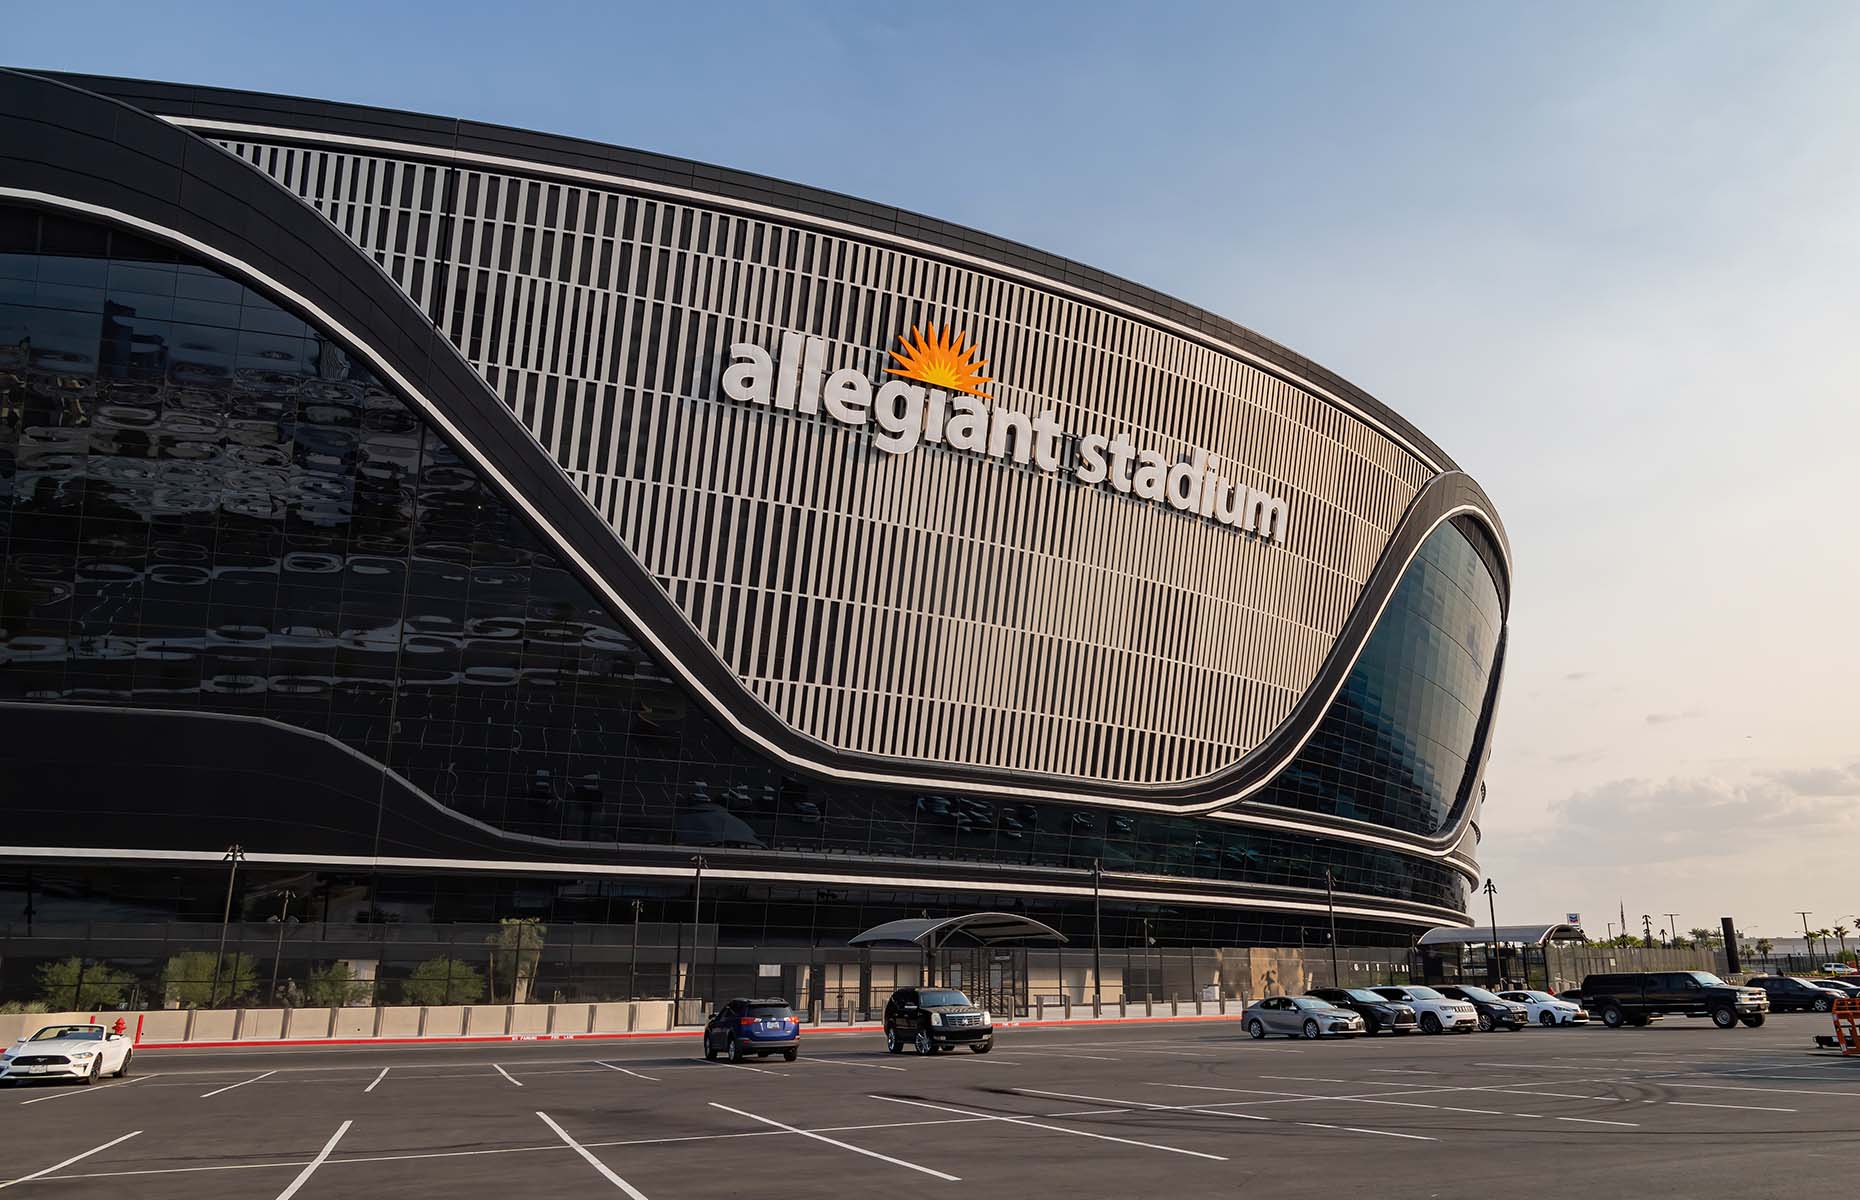 Allegiant Stadium, Nevada. (Image: Kit Leong/Shutterstock)